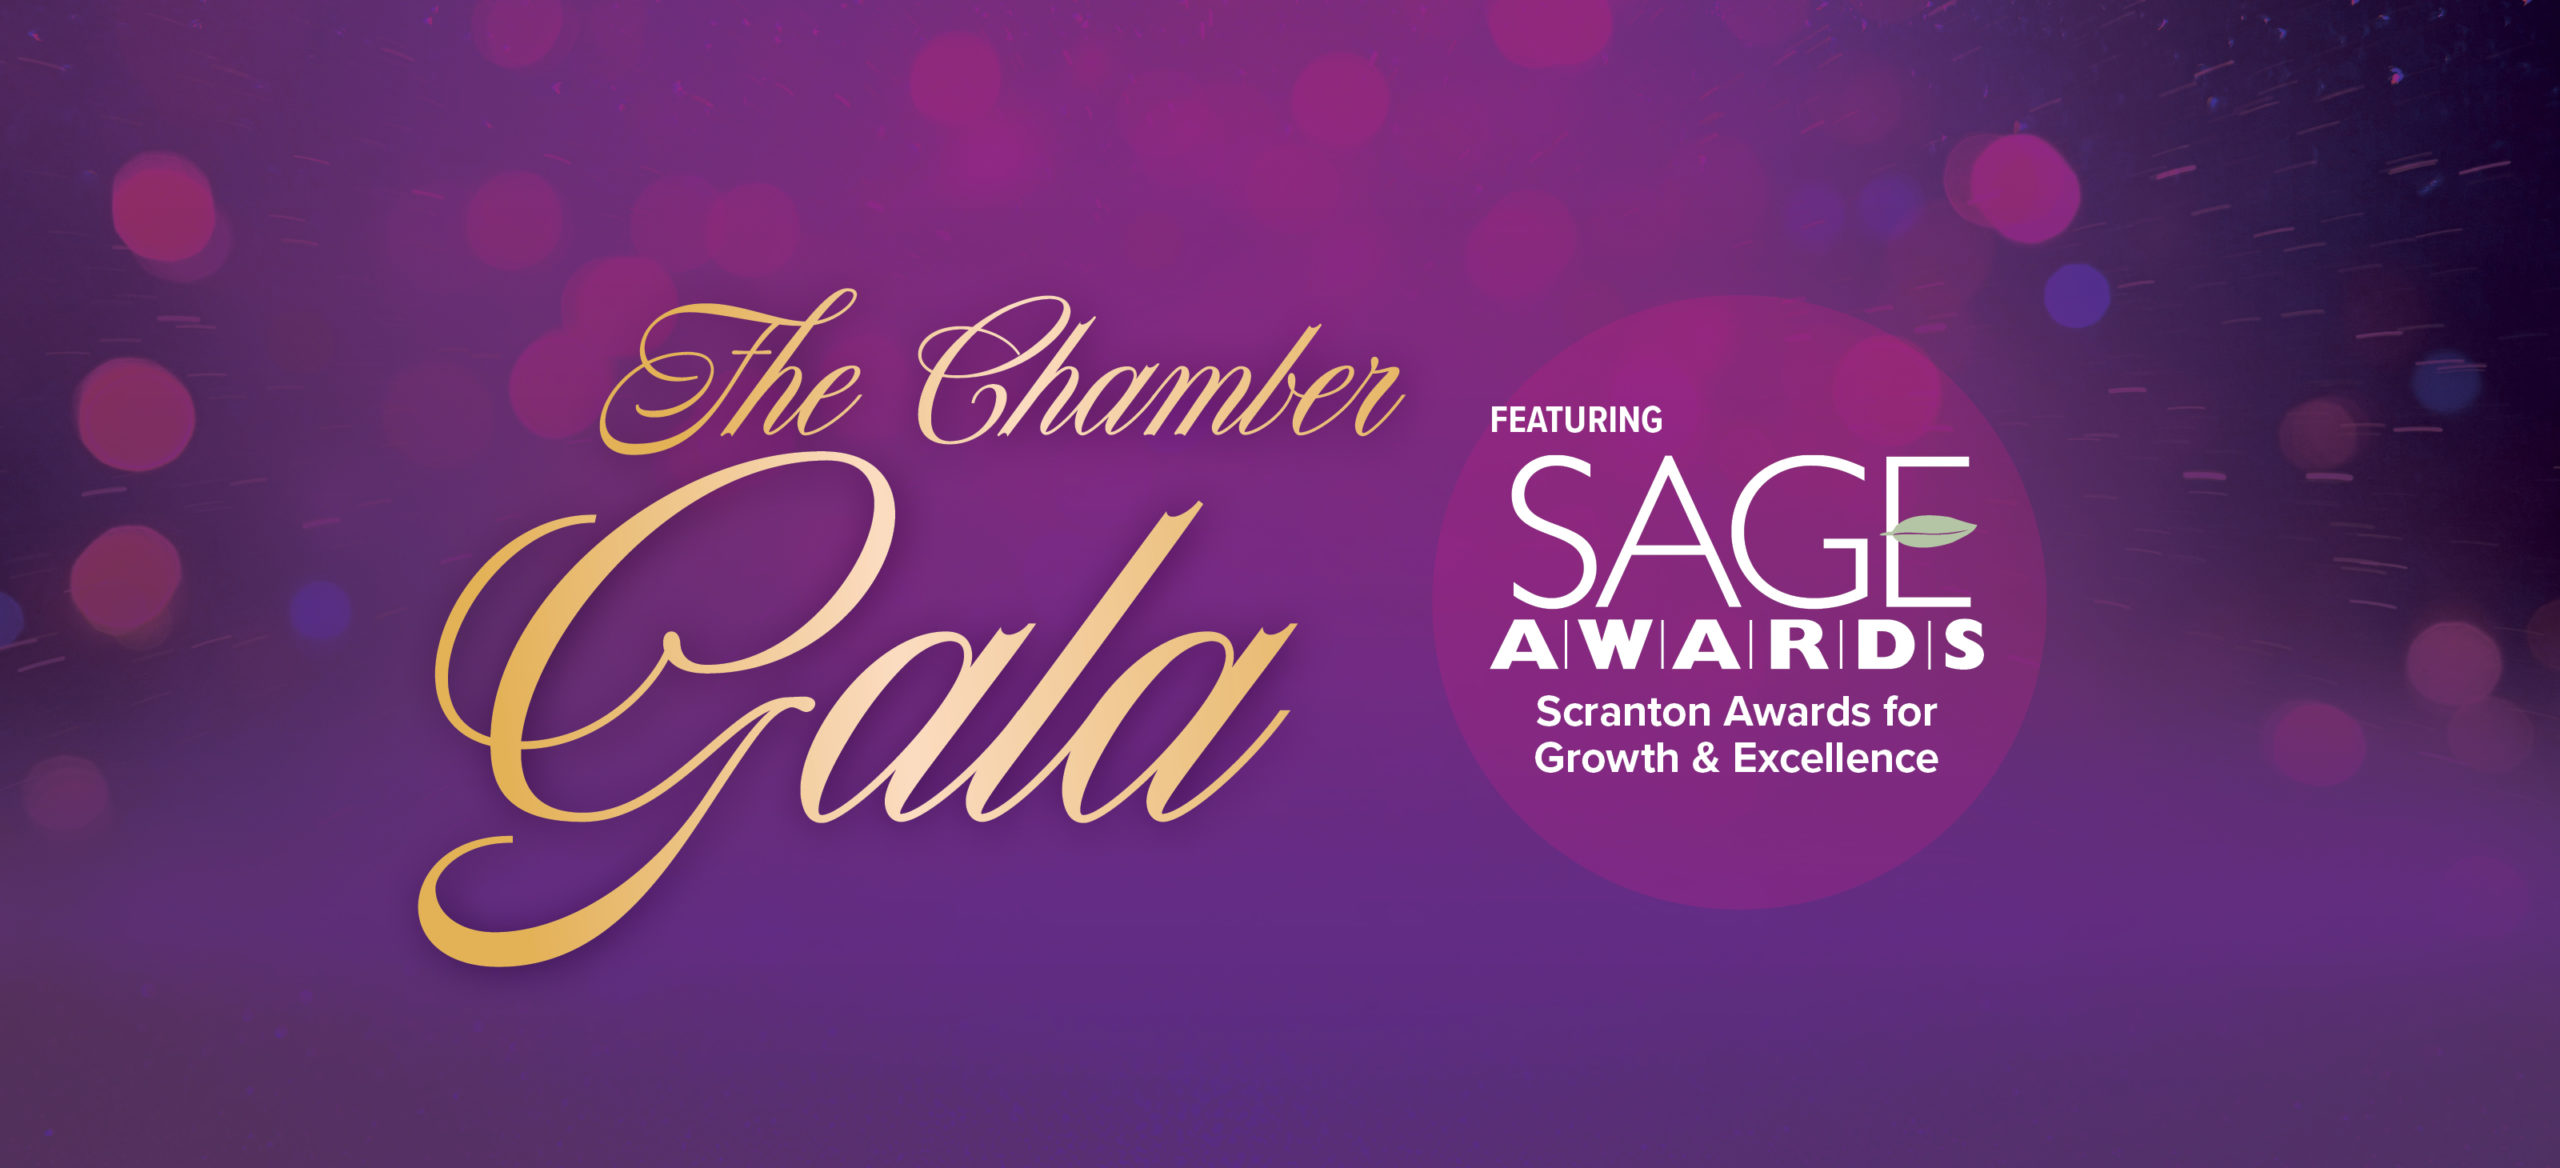 Chamber Celebrates 2021 SAGE Award Winners at Chamber Gala